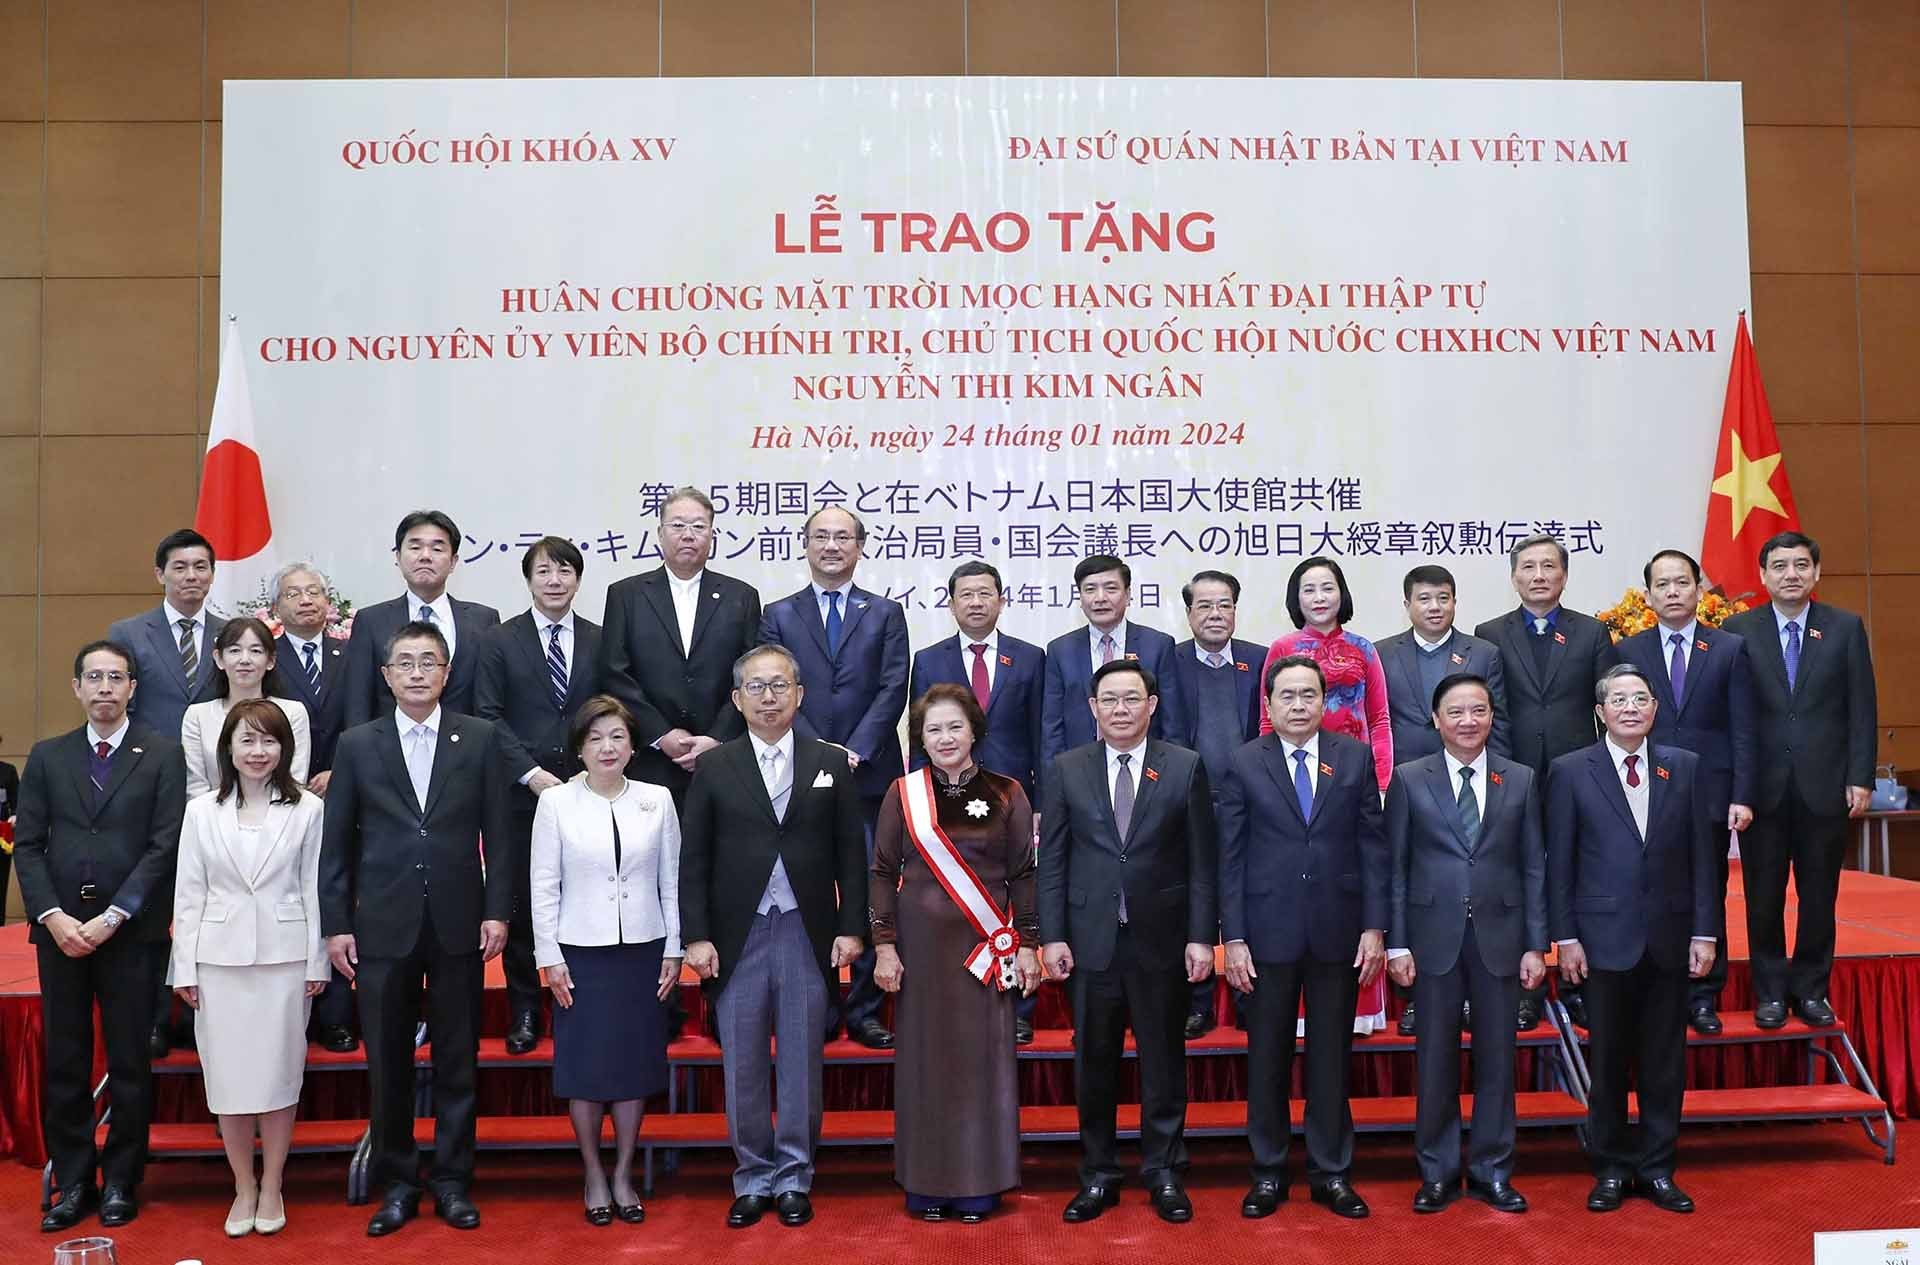 Chủ tịch Quốc hội Vương Đình Huệ và các Phó Chủ tịch Quốc hội cùng các đại biểu chúc mừng nguyên Chủ tịch Quốc hội Nguyễn Thị Kim Ngân. (Nguồn: TTXVN)